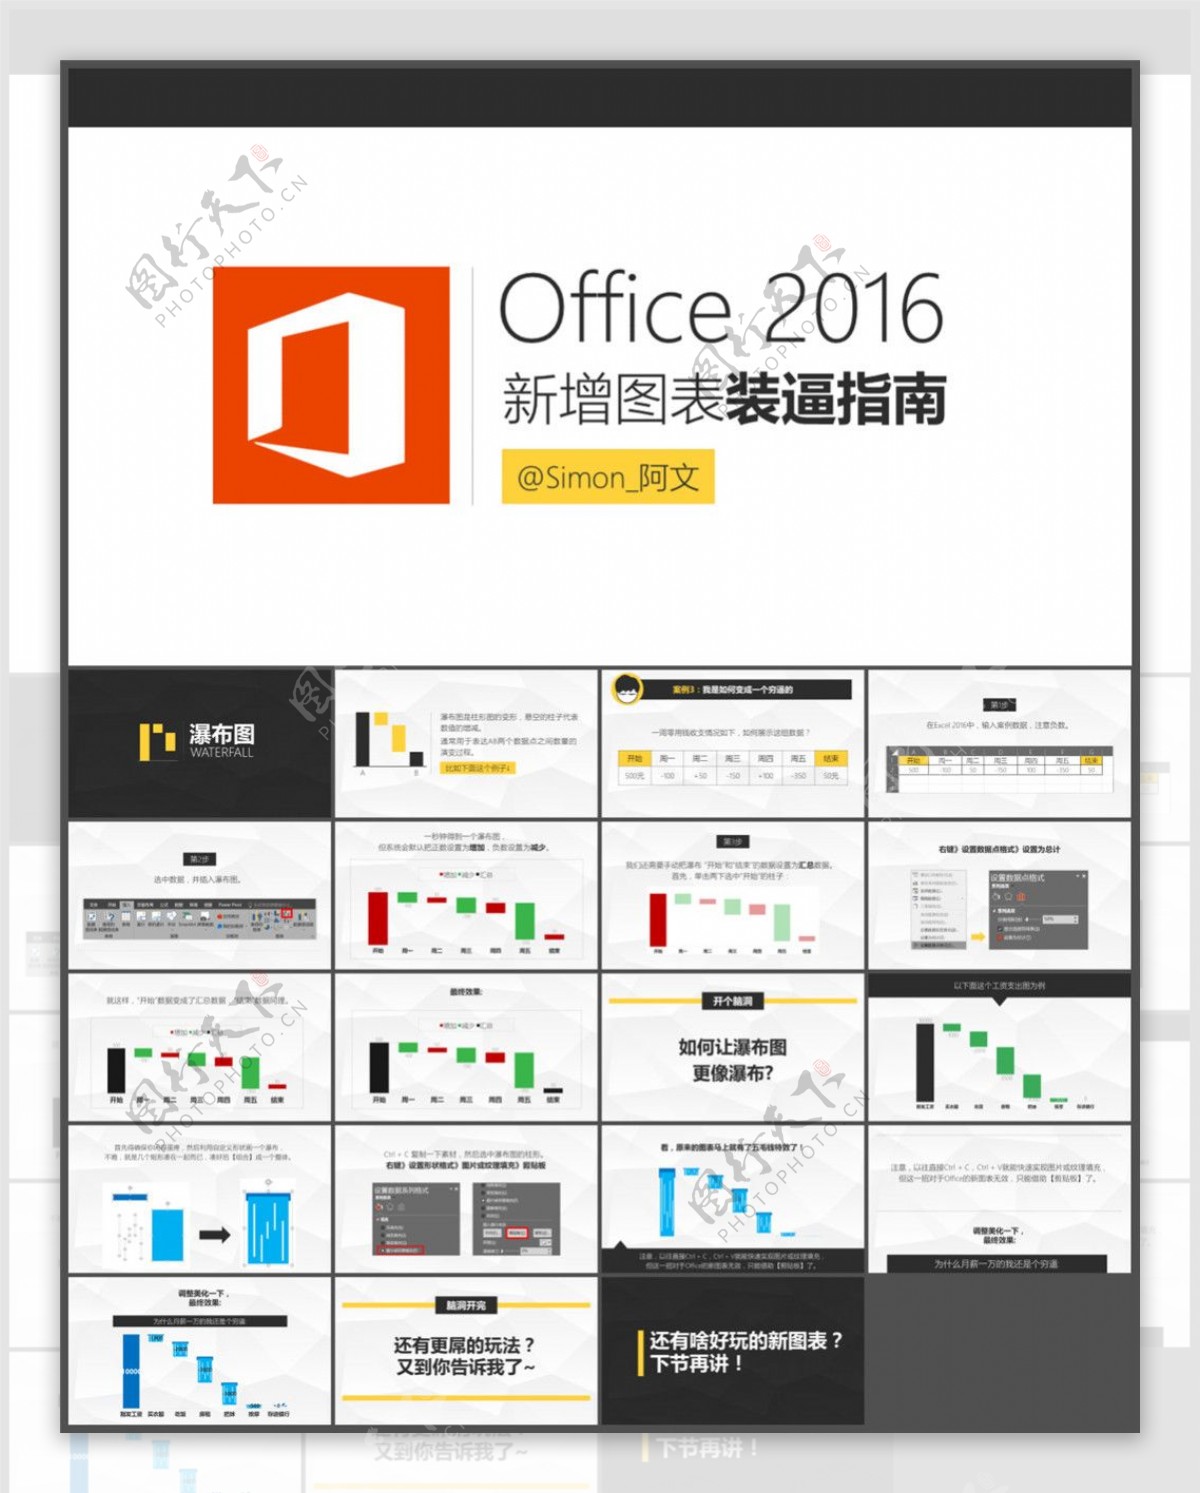 Office2016新增图表装逼指南流畅瀑布图PPT模板